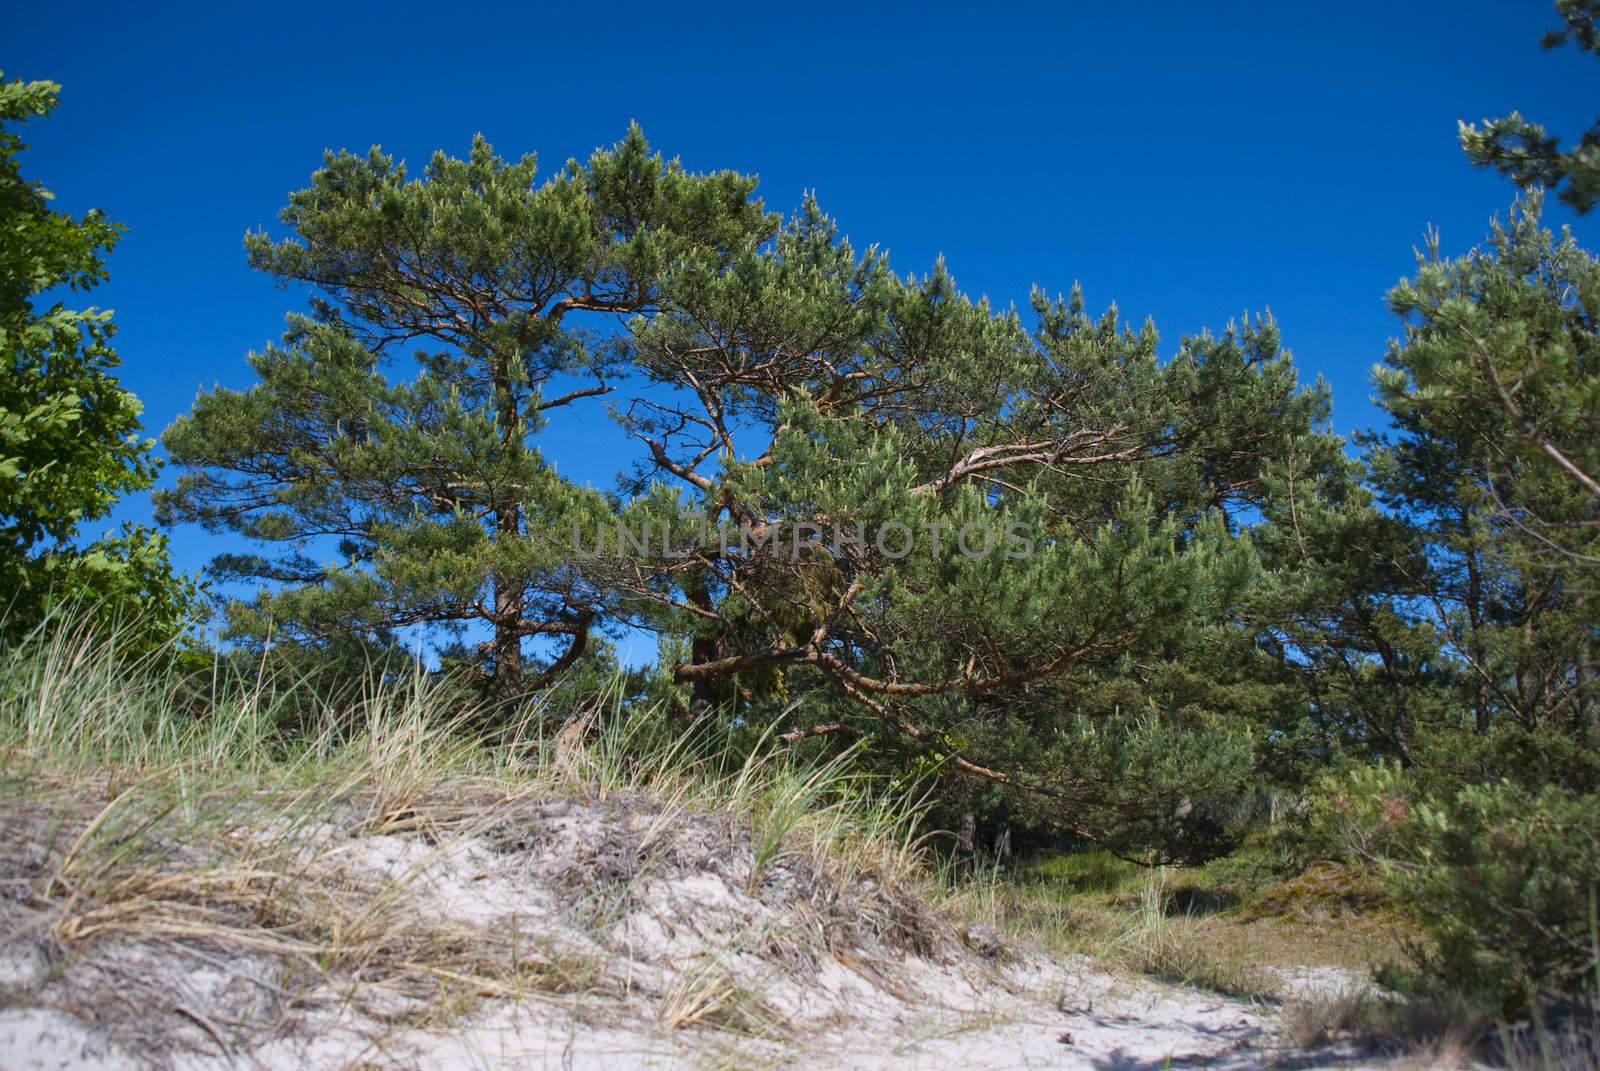 sand dunes eating up forest by wojciechkozlowski